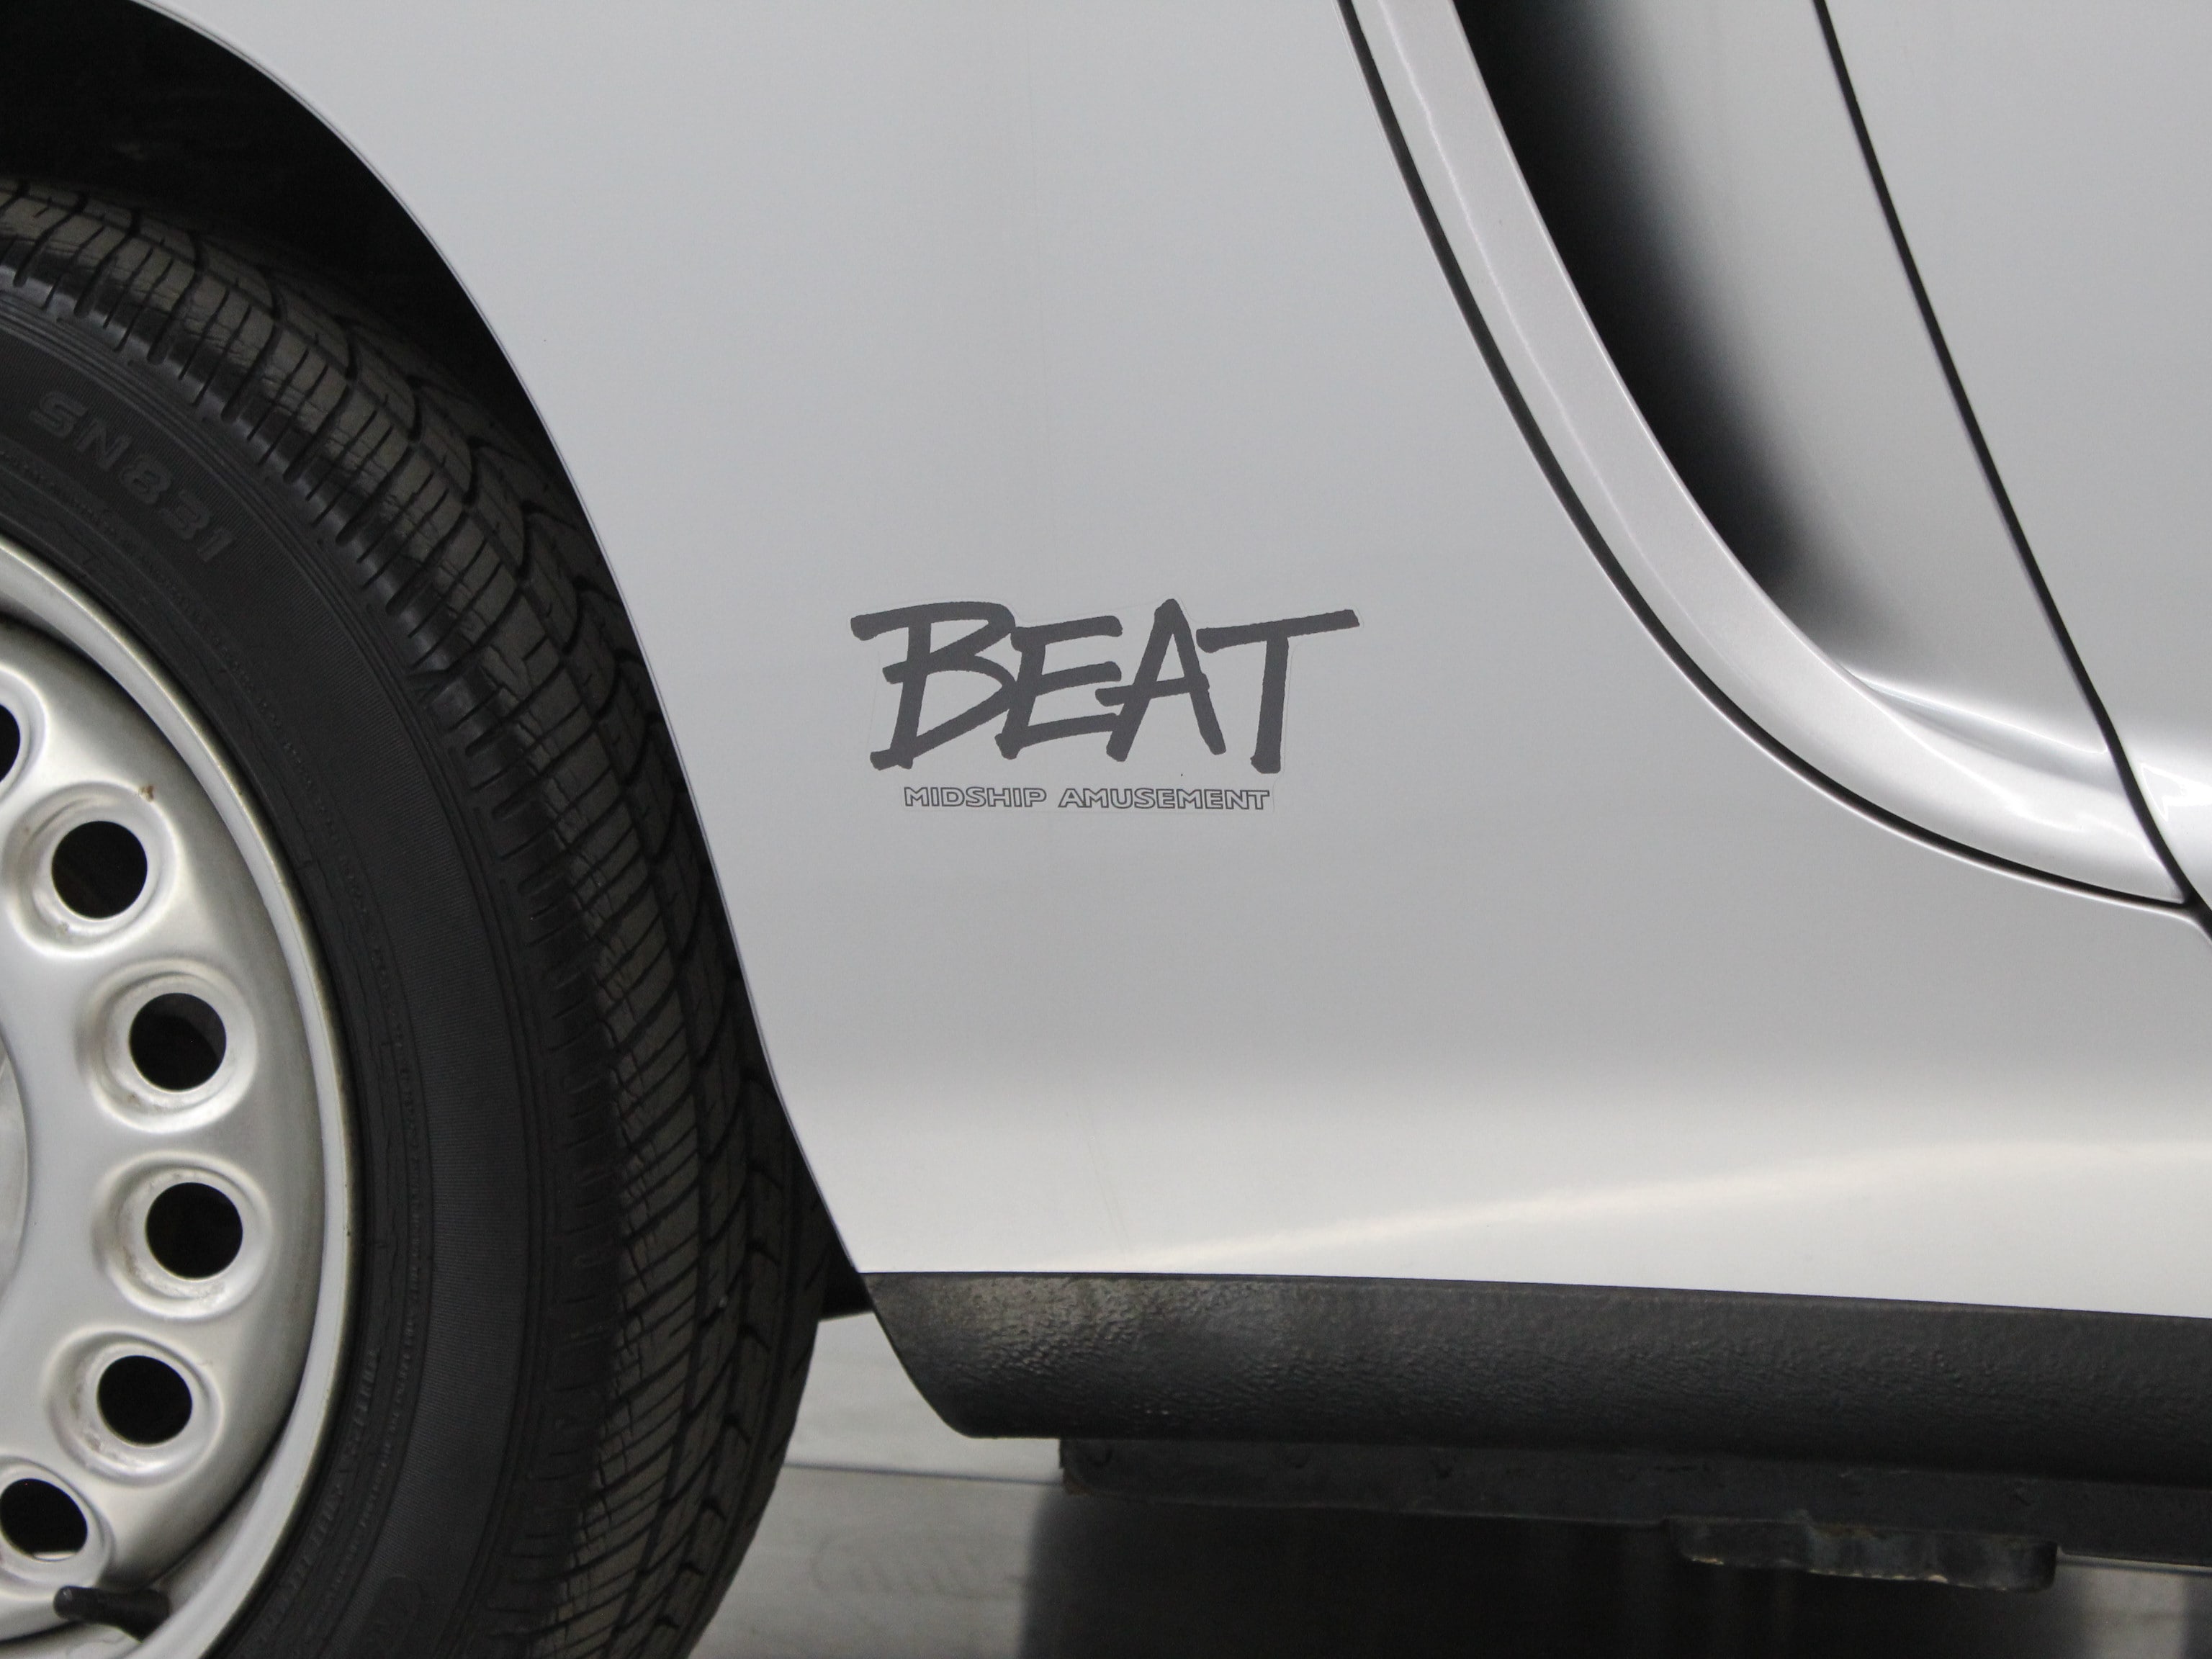 1991 Honda Beat 46